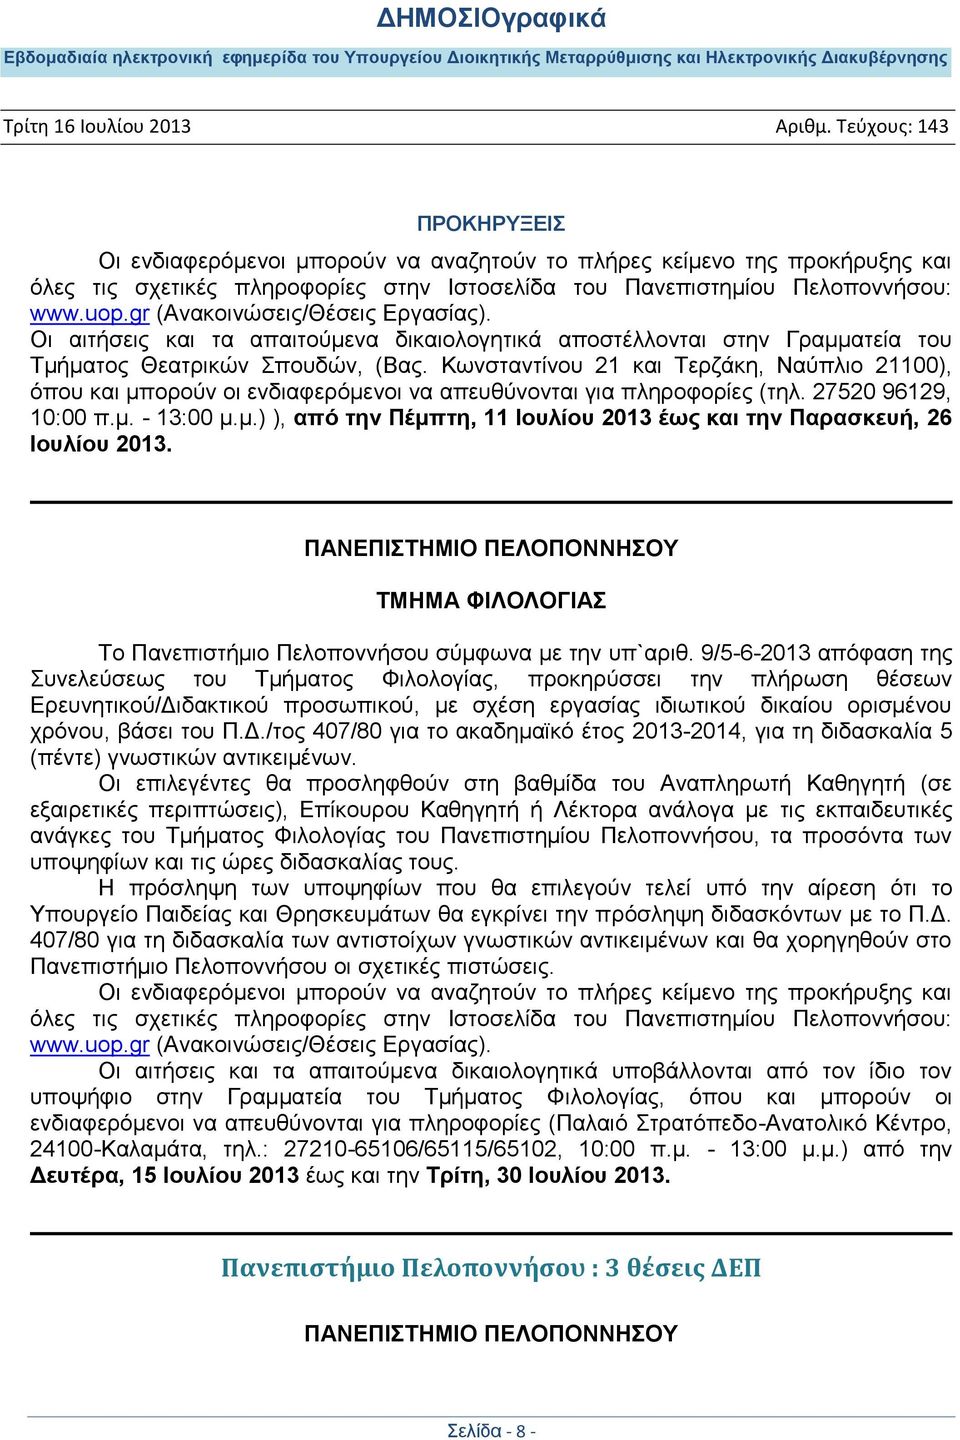 Κωνσταντίνου 21 και Τερζάκη, Ναύπλιο 21100), όπου και μπορούν οι ενδιαφερόμενοι να απευθύνονται για πληροφορίες (τηλ. 27520 96129, 10:00 π.μ. - 13:00 μ.μ.) ), από την Πέμπτη, 11 Ιουλίου 2013 έως και την Παρασκευή, 26 Ιουλίου 2013.